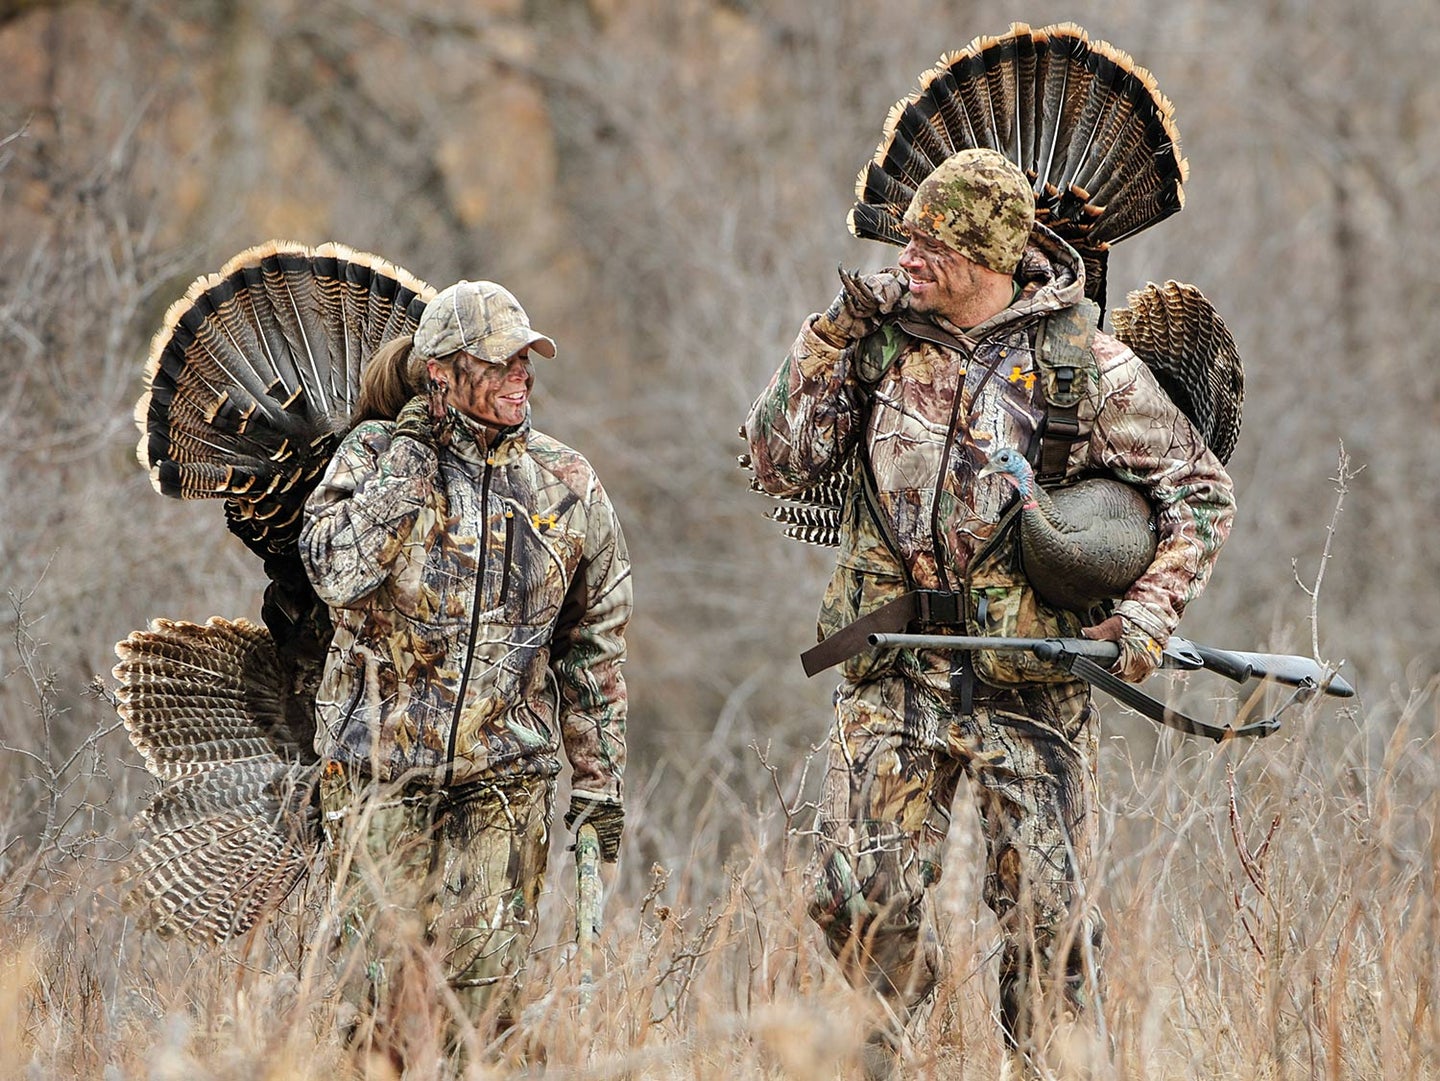 Two turkey hunters walking through a field.